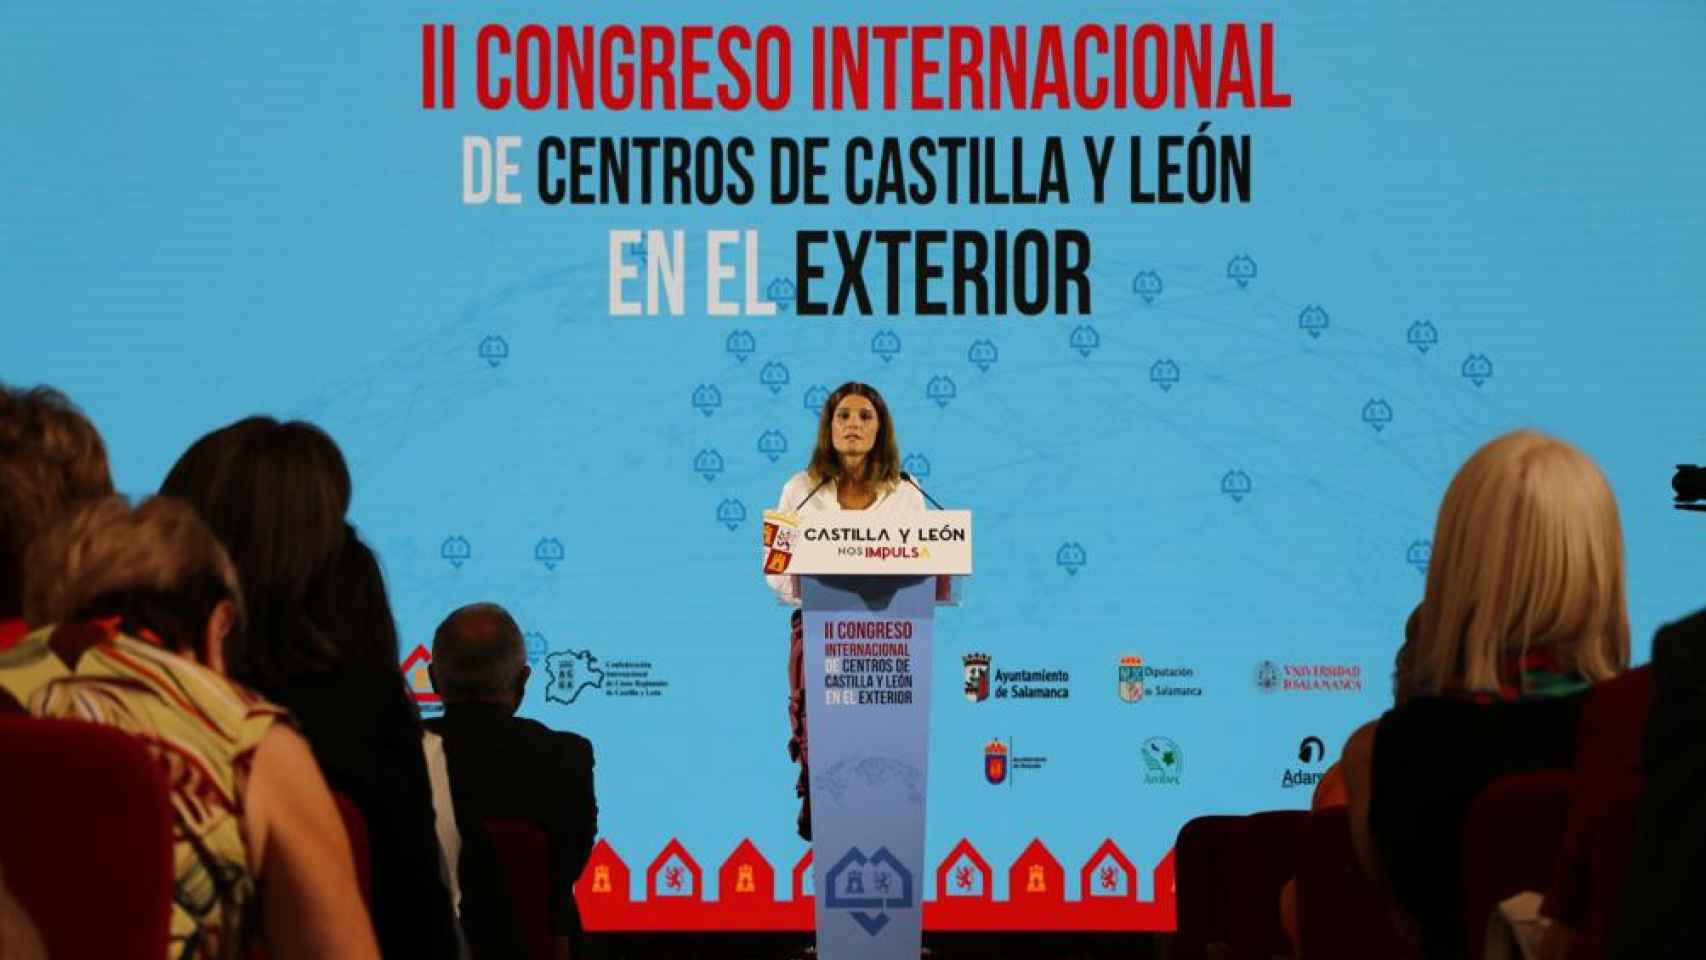 Almudena Parres interviene en el Congreso